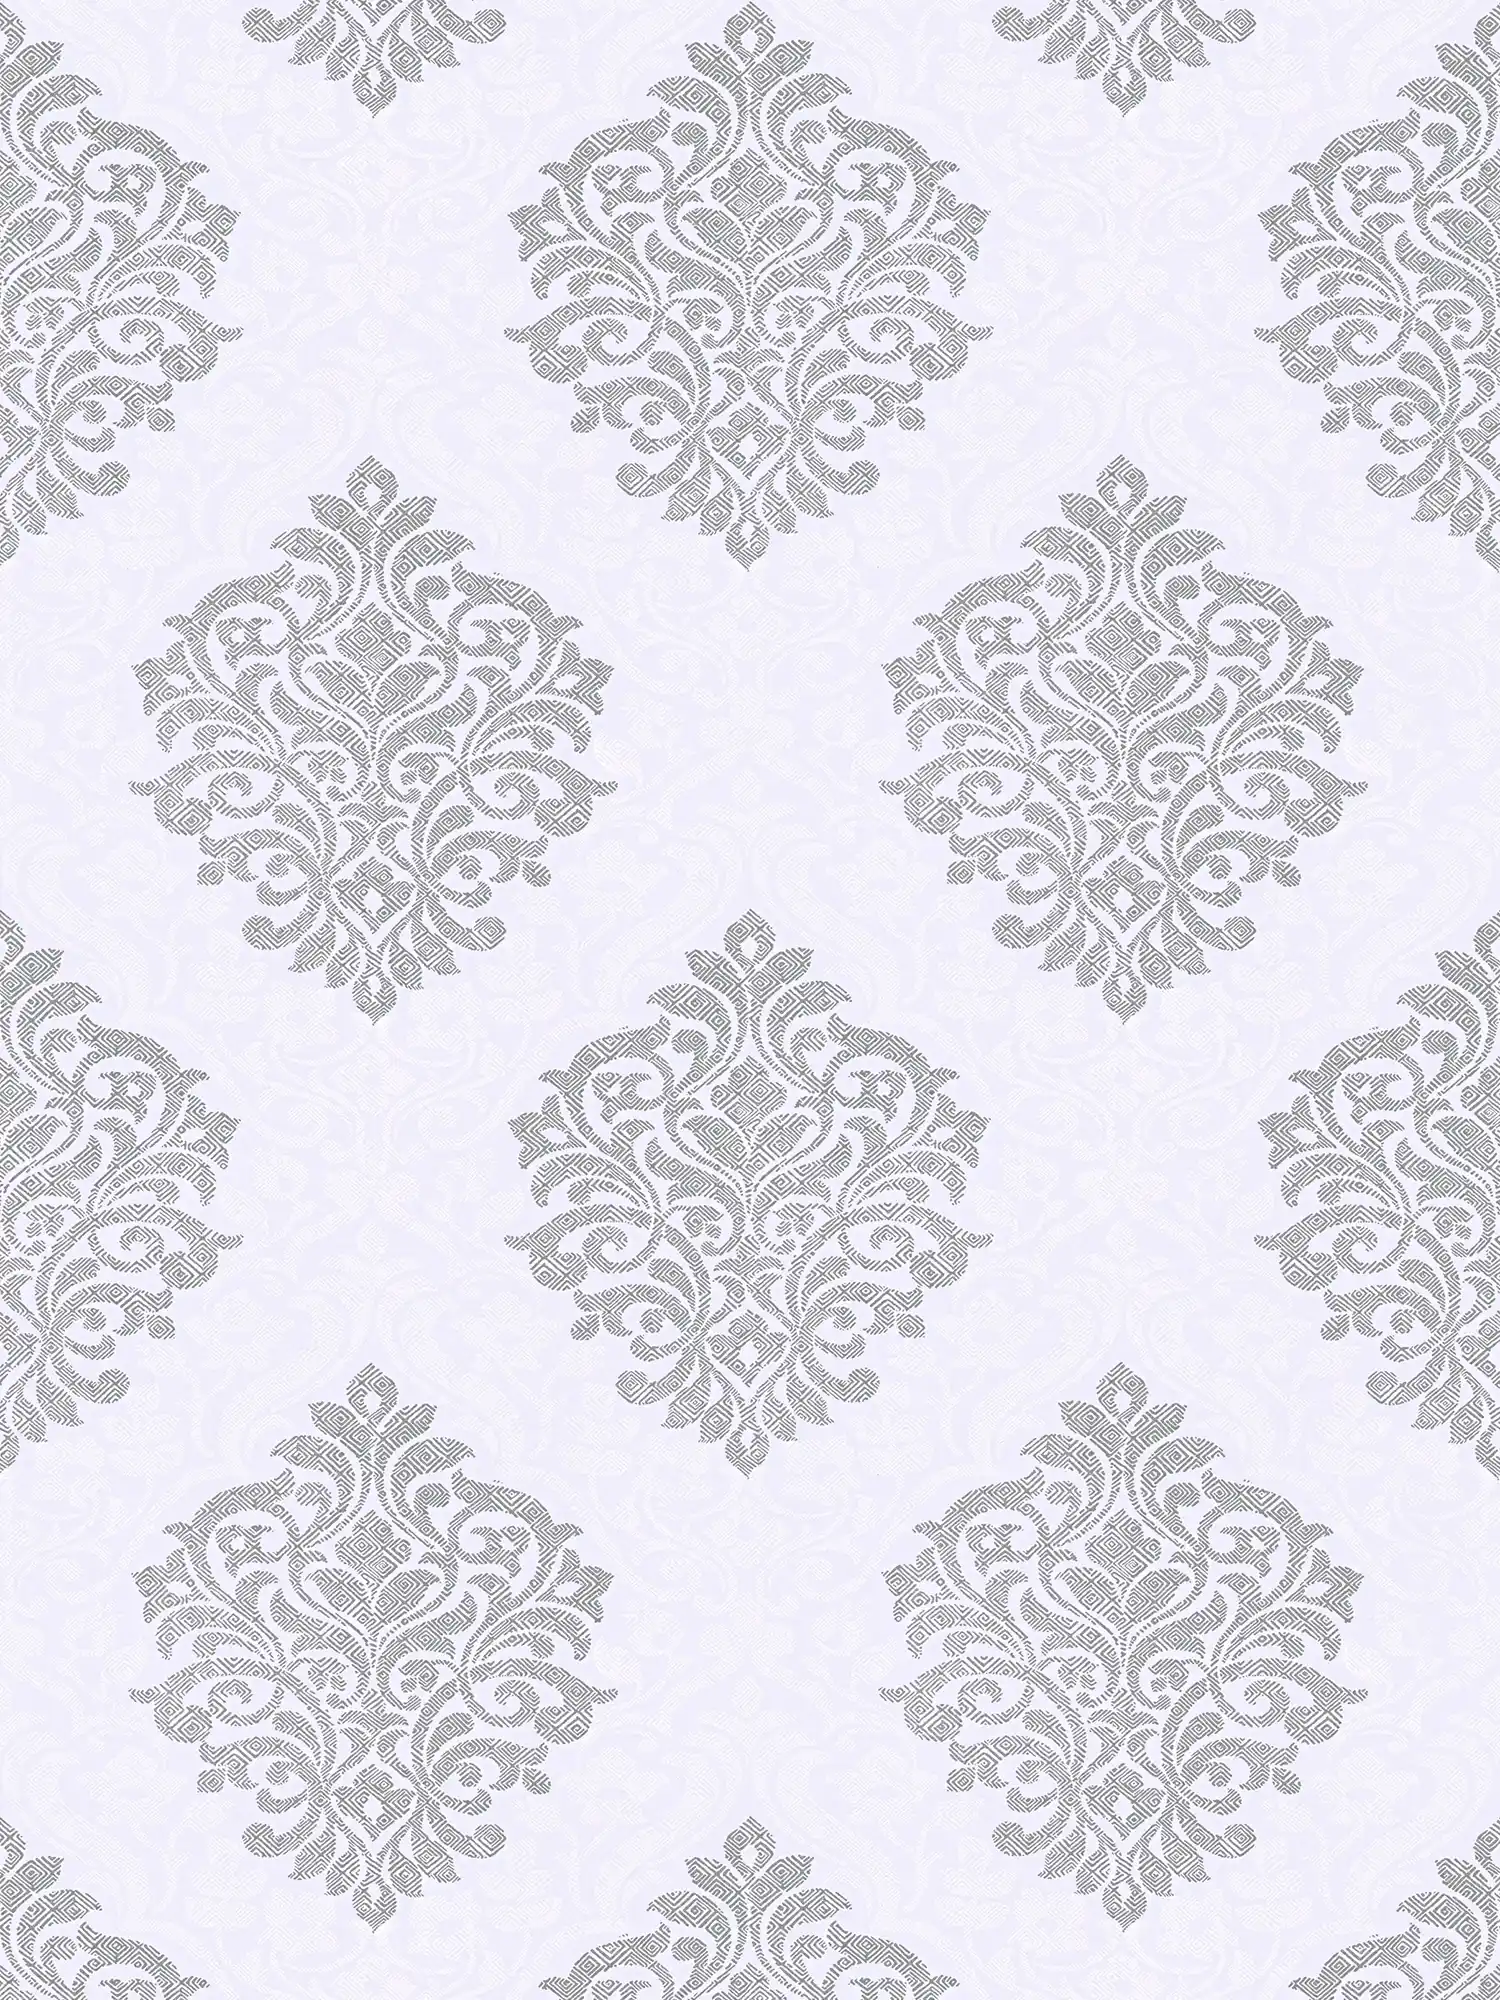         Florale Ornamenttapete Rautenmuster im Ethno-Stil – Grau, Weiß, Silber
    